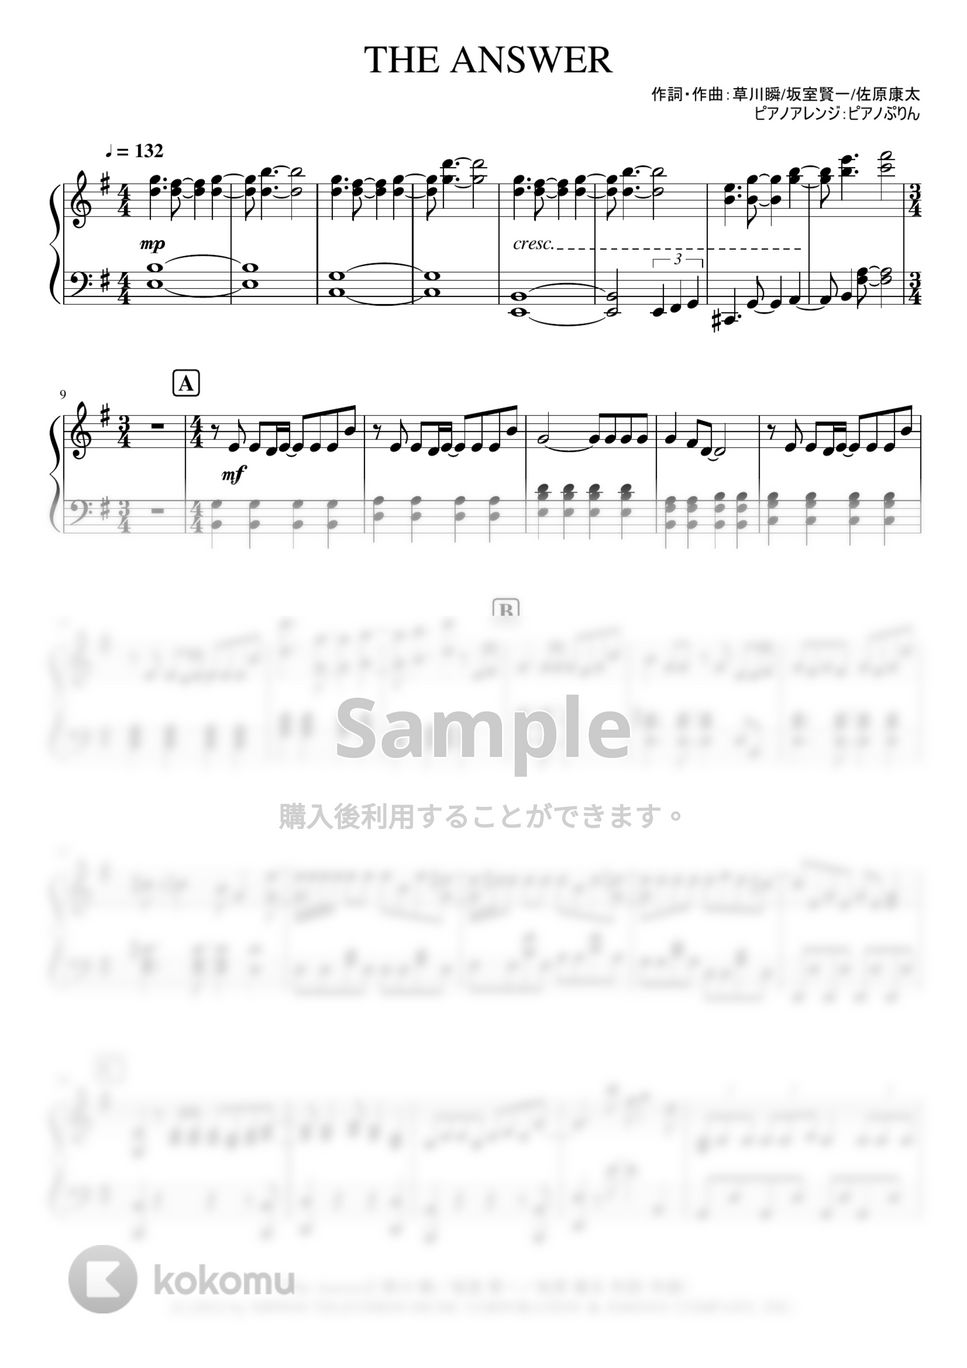 なにわ男子 - The Answer (なにわ男子2nd single『The Answer/サチアレ』ピアノソロ) by ピアノぷりん